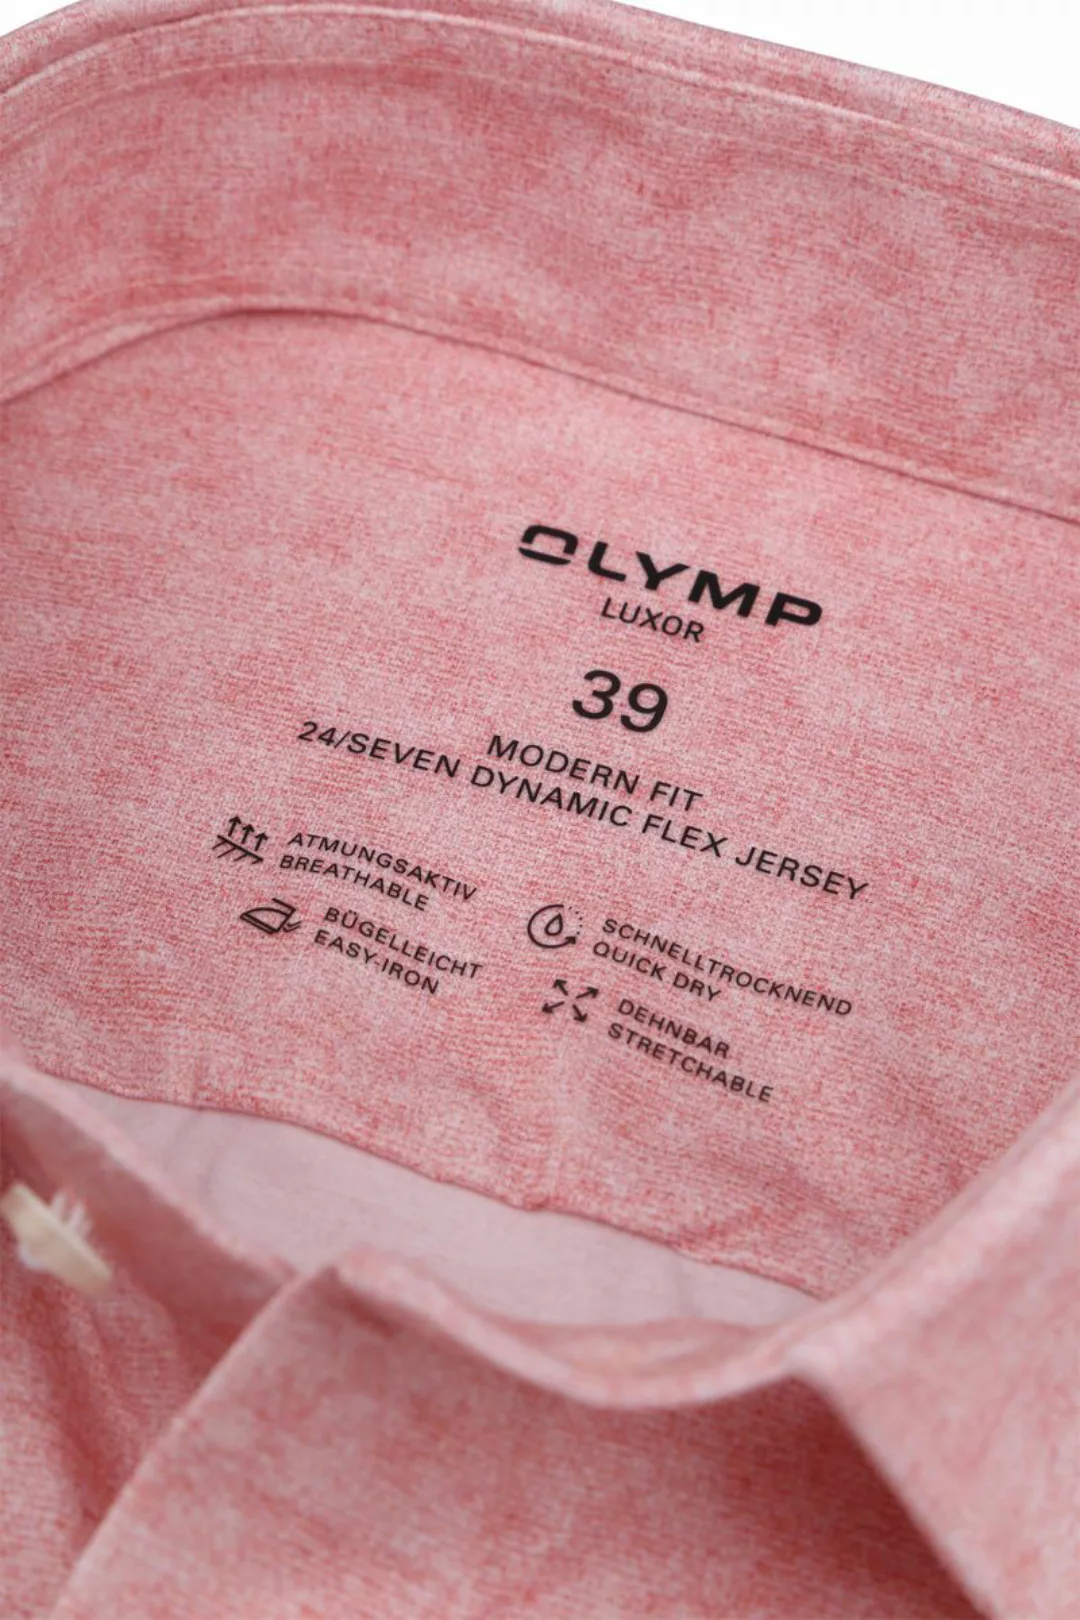 OLYMP Luxor Hemd Stretch Rosa - Größe 41 günstig online kaufen